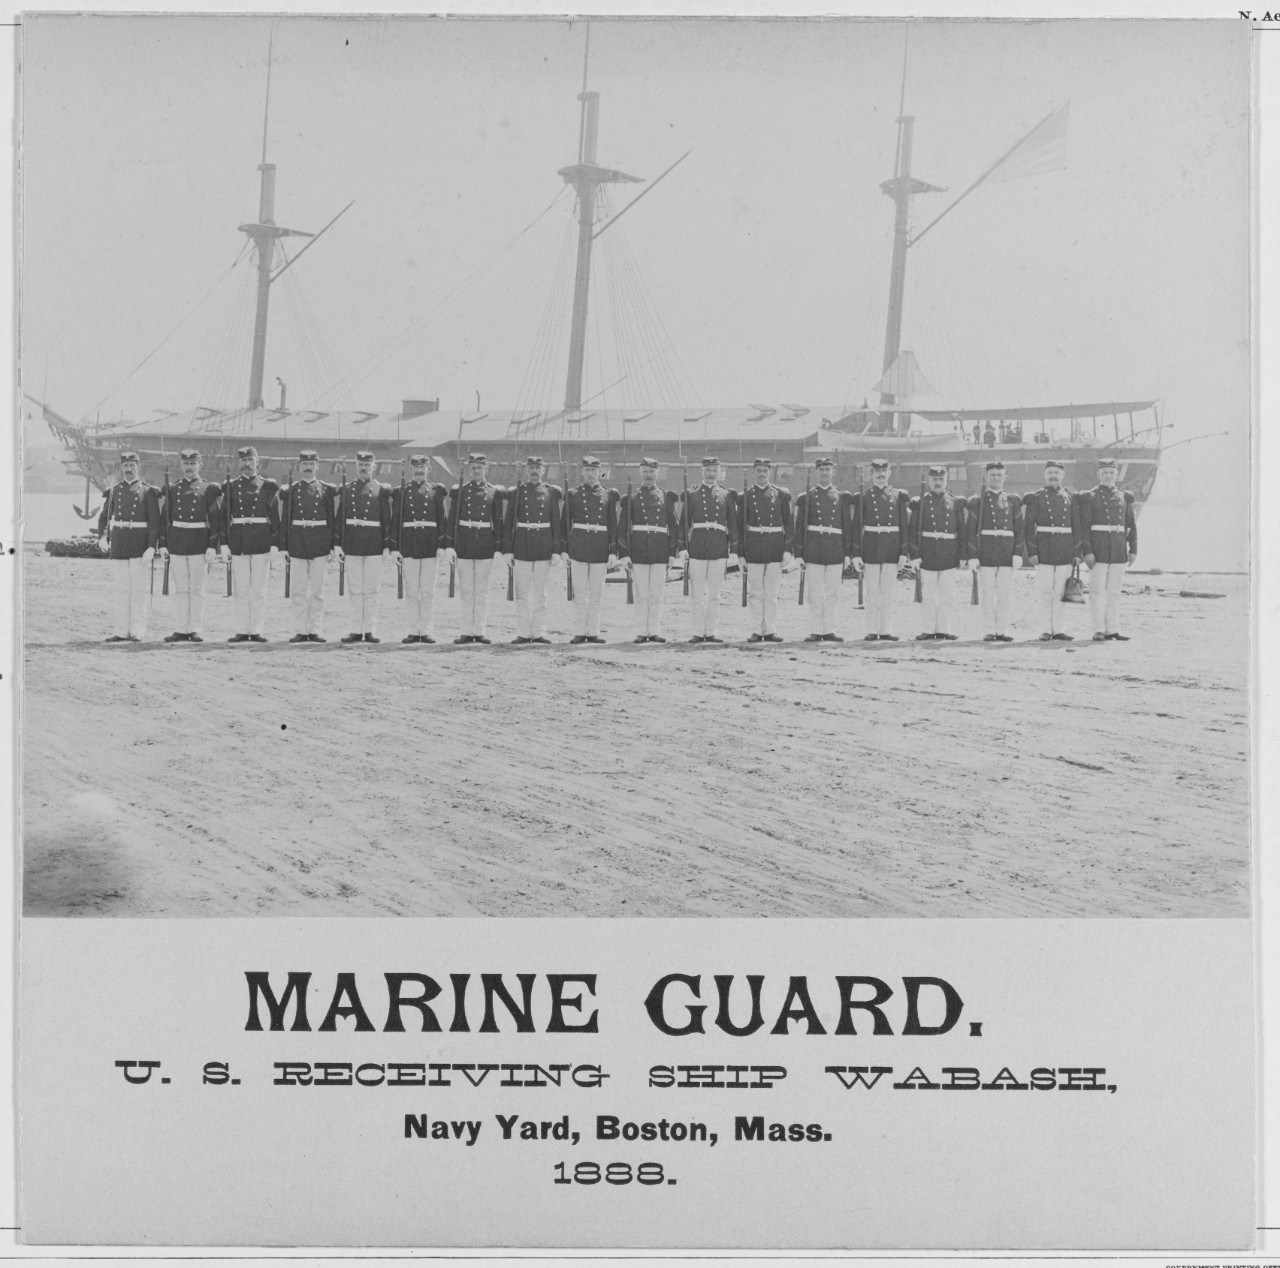 Marine Guard U.S. receiving ship WABASH